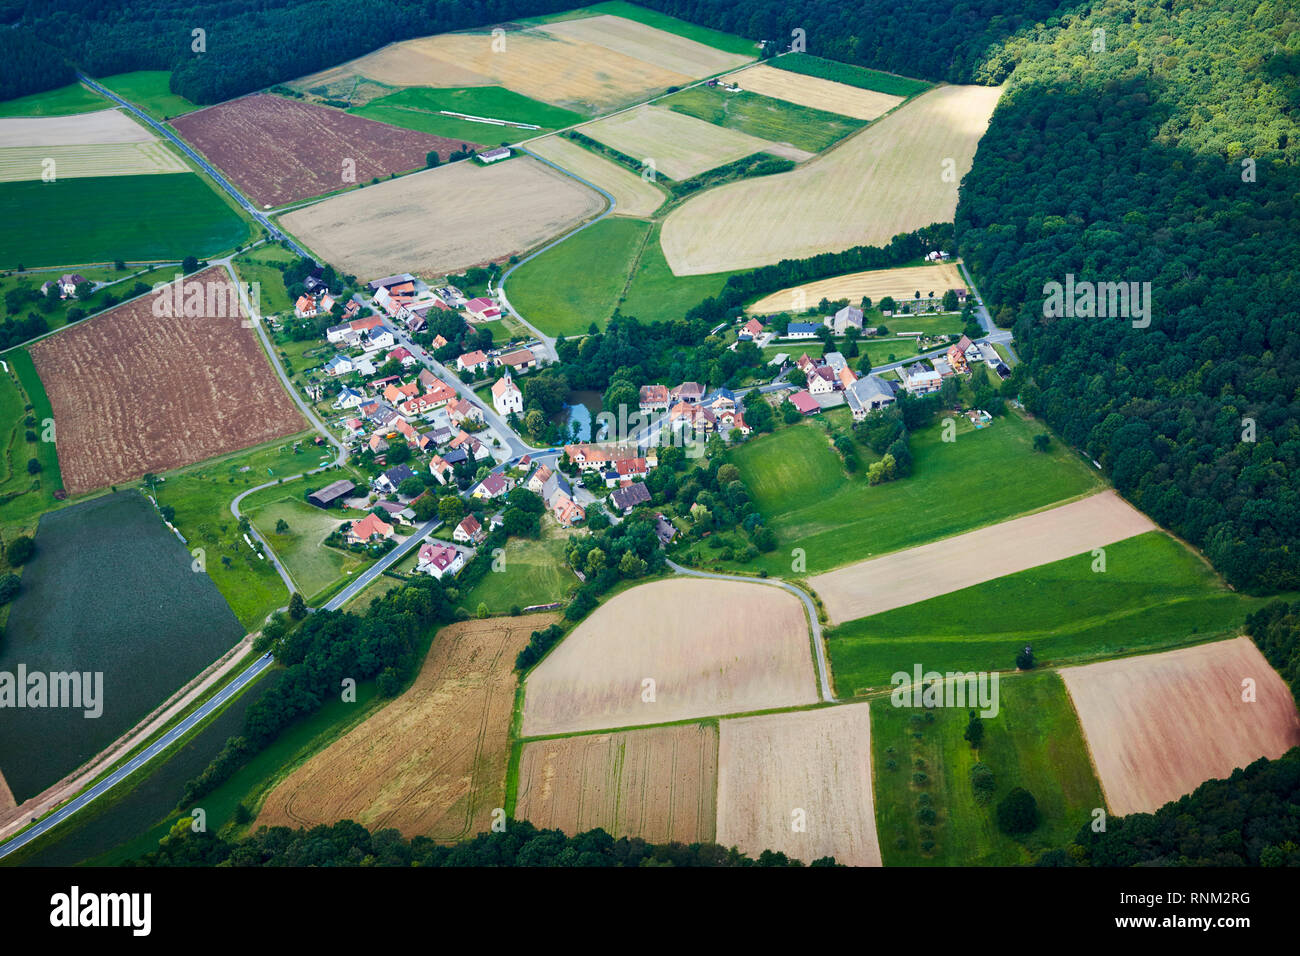 La ville Fabrikschleichach vu de l'air. Municipalité Falkenberg, district de Hassberg, Bavière, Allemagne Banque D'Images